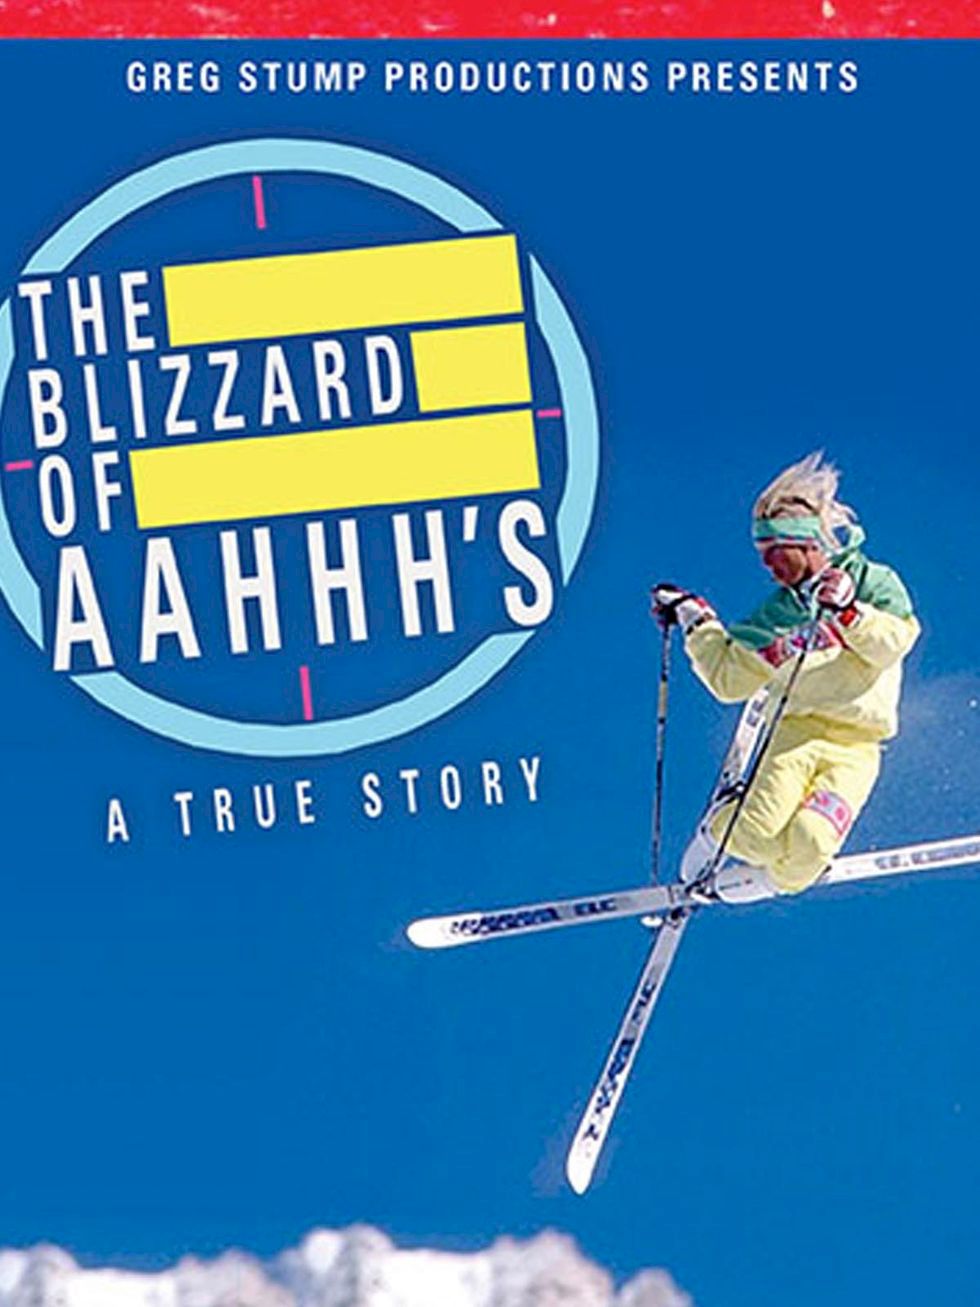 Klassisk skidfilm: the Blizzard of Aahhh’s